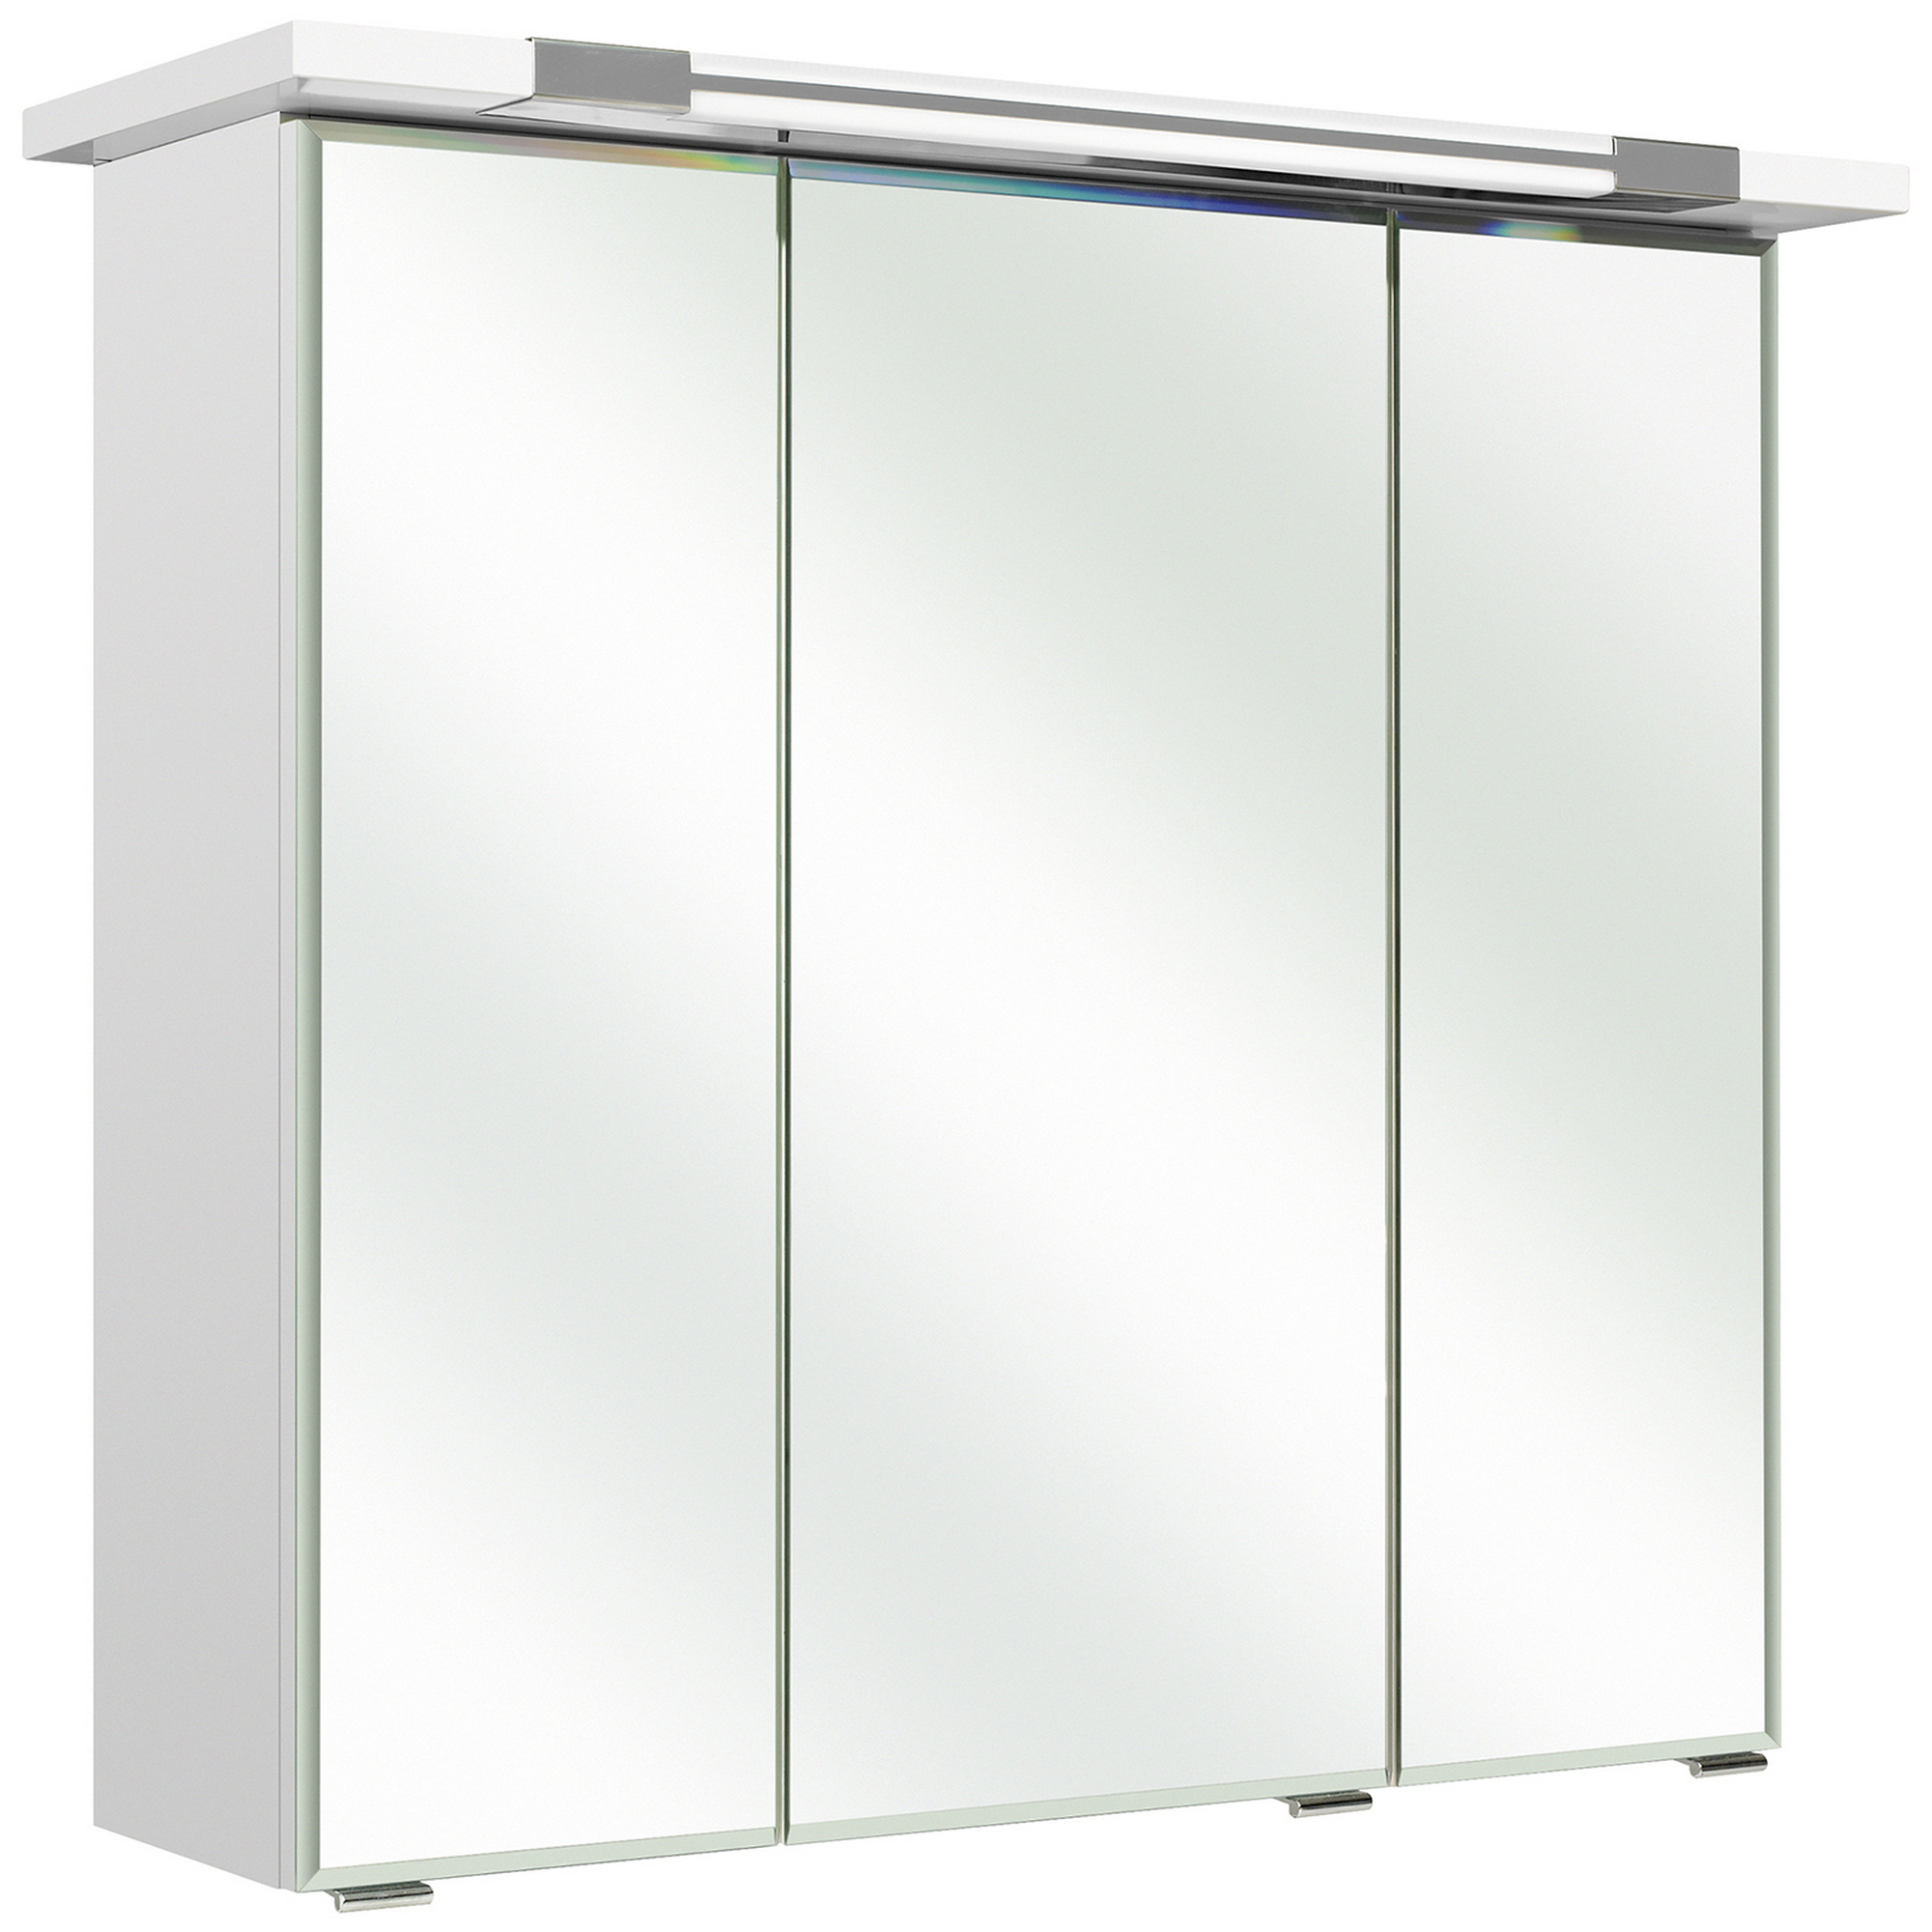 Spiegelschrank 'Primo' weiß 75 x 72 cm mit Kranzbodenbeleuchtung + product picture